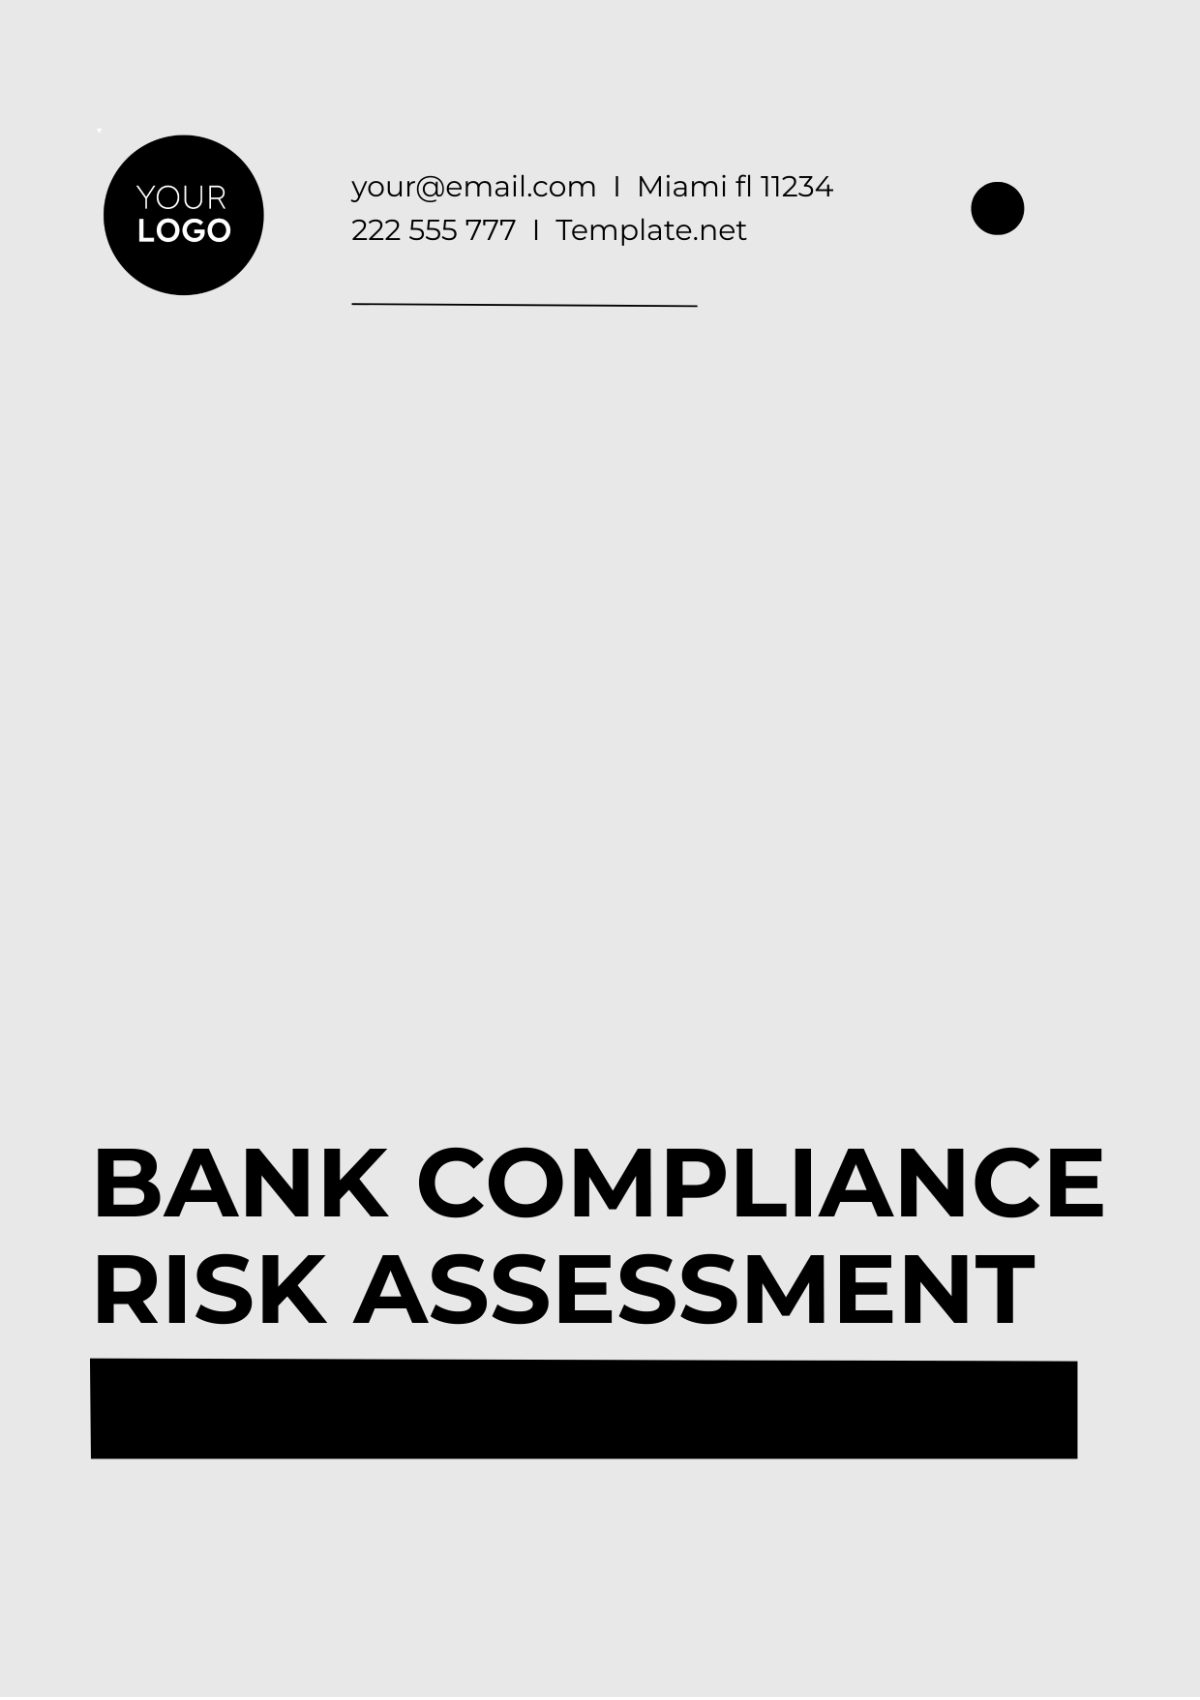 Bank Compliance Risk Assessment Template